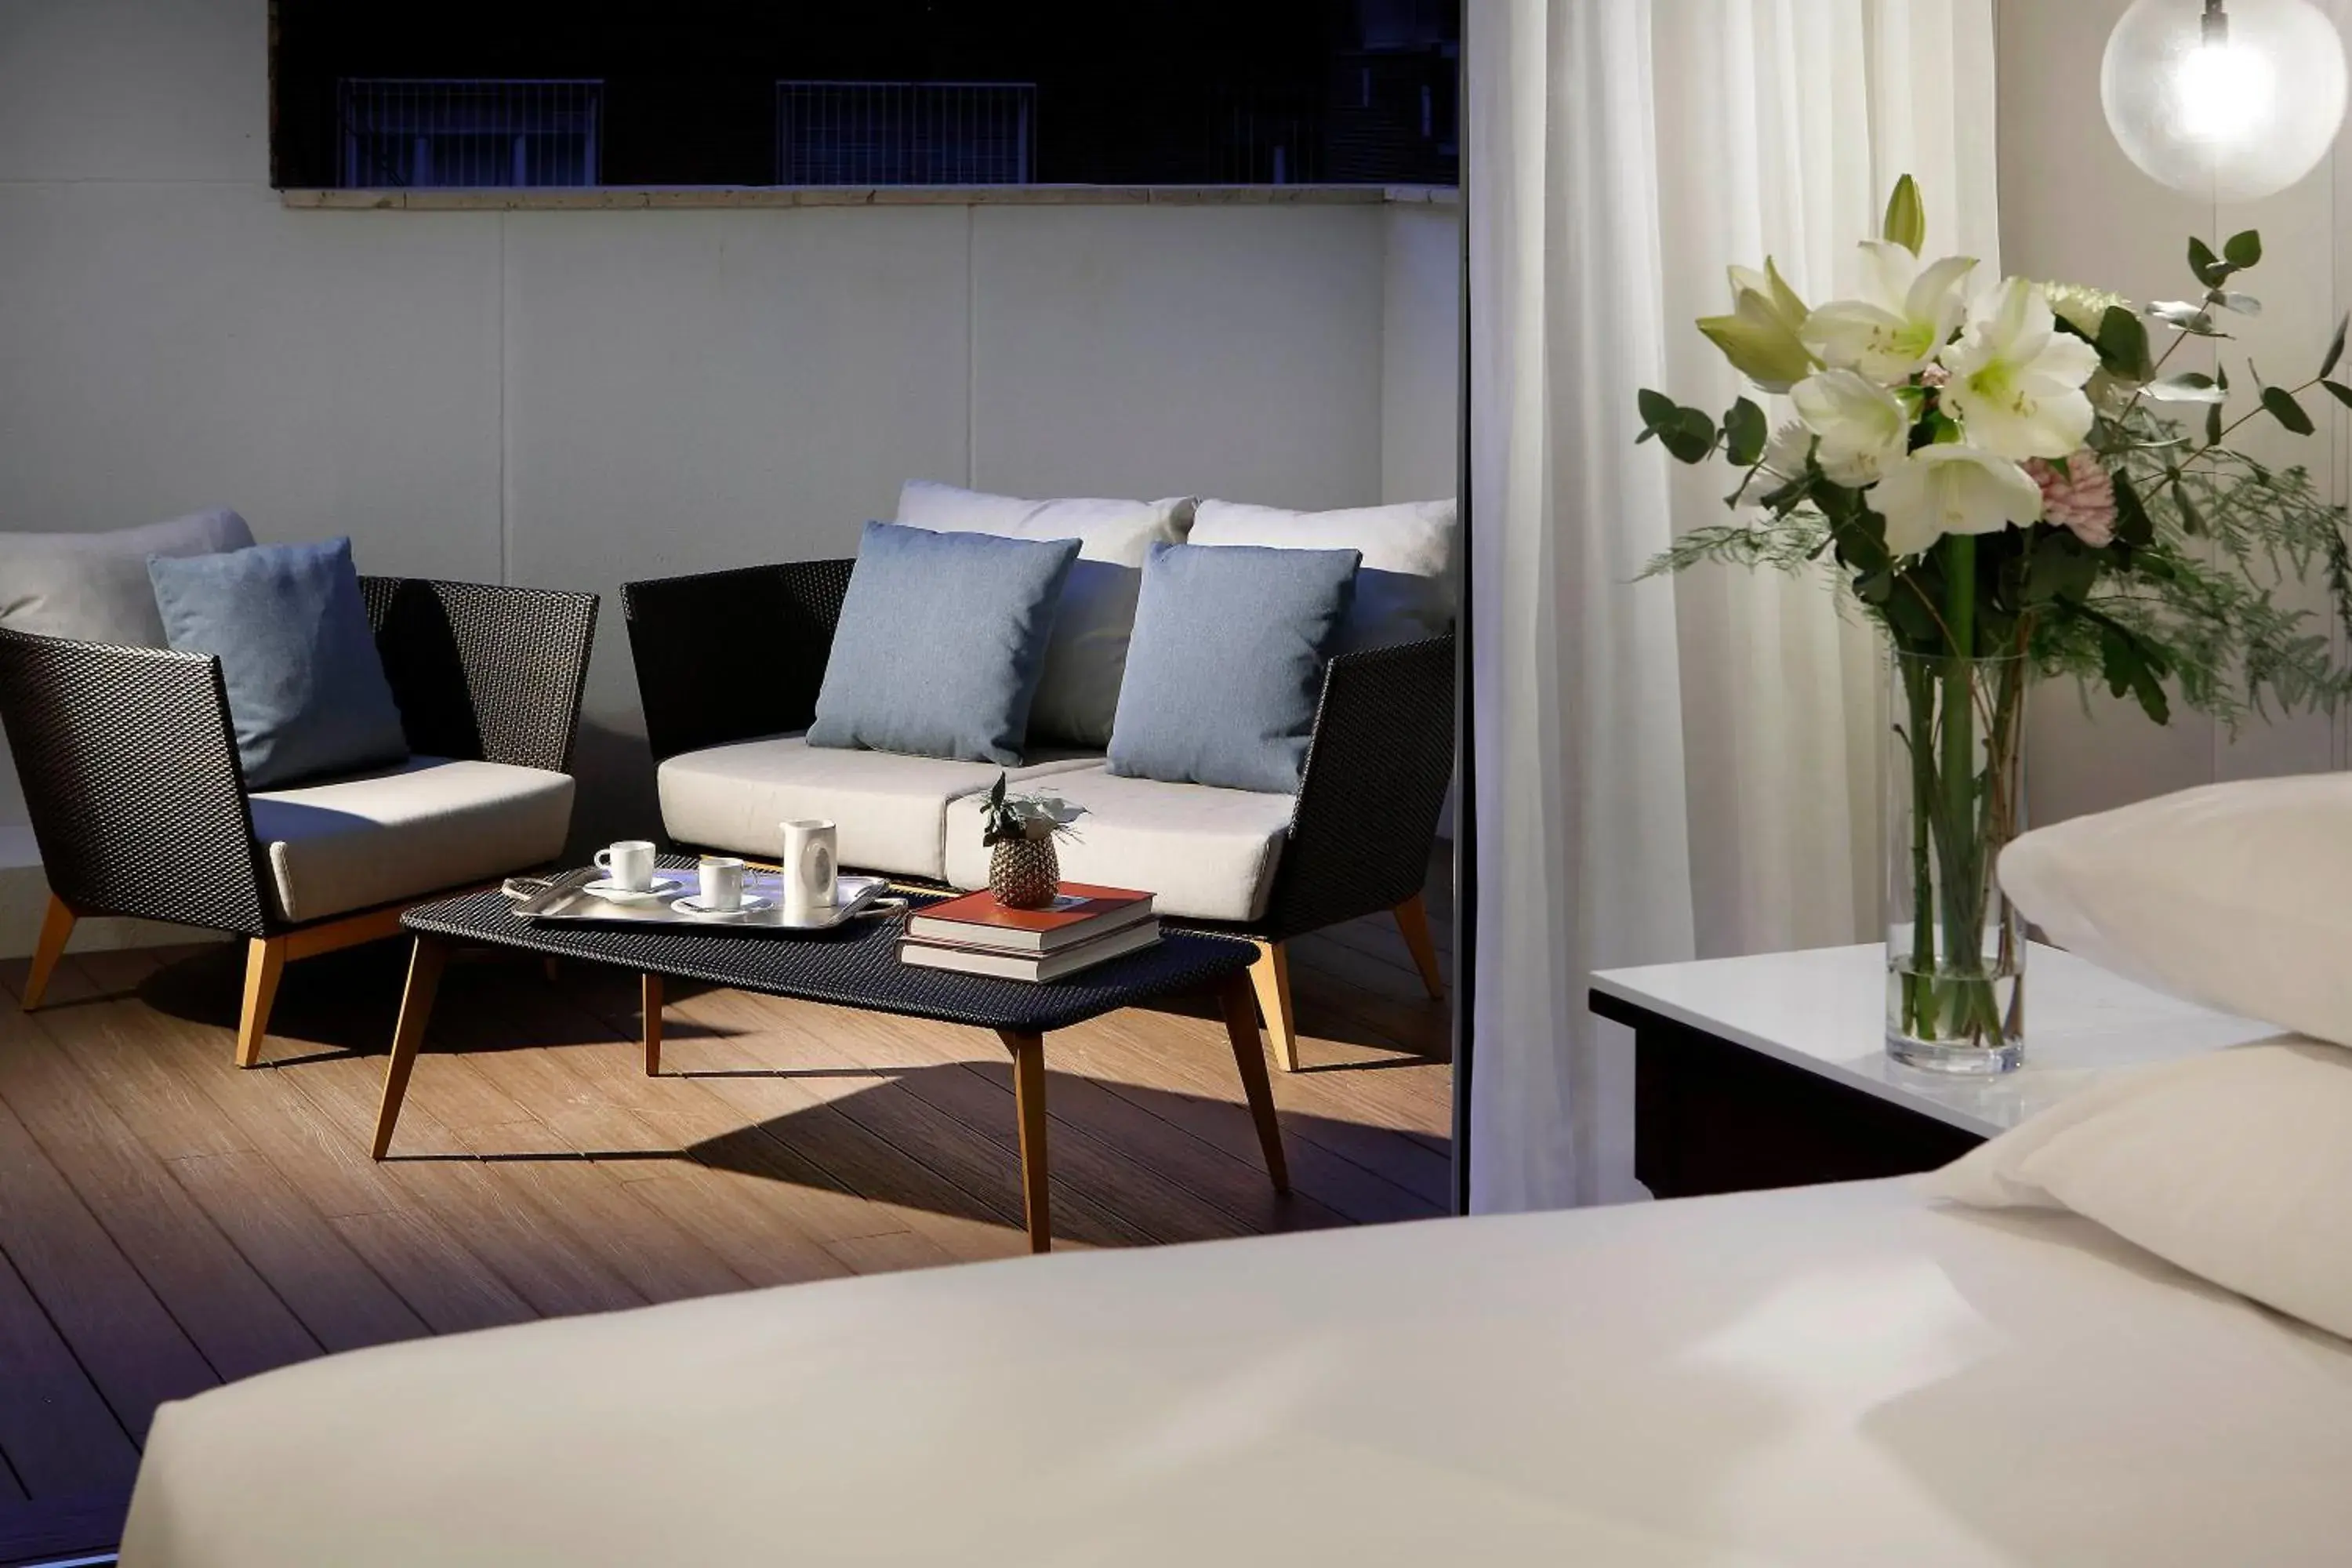 Balcony/Terrace, Seating Area in Hyatt Regency Hesperia Madrid